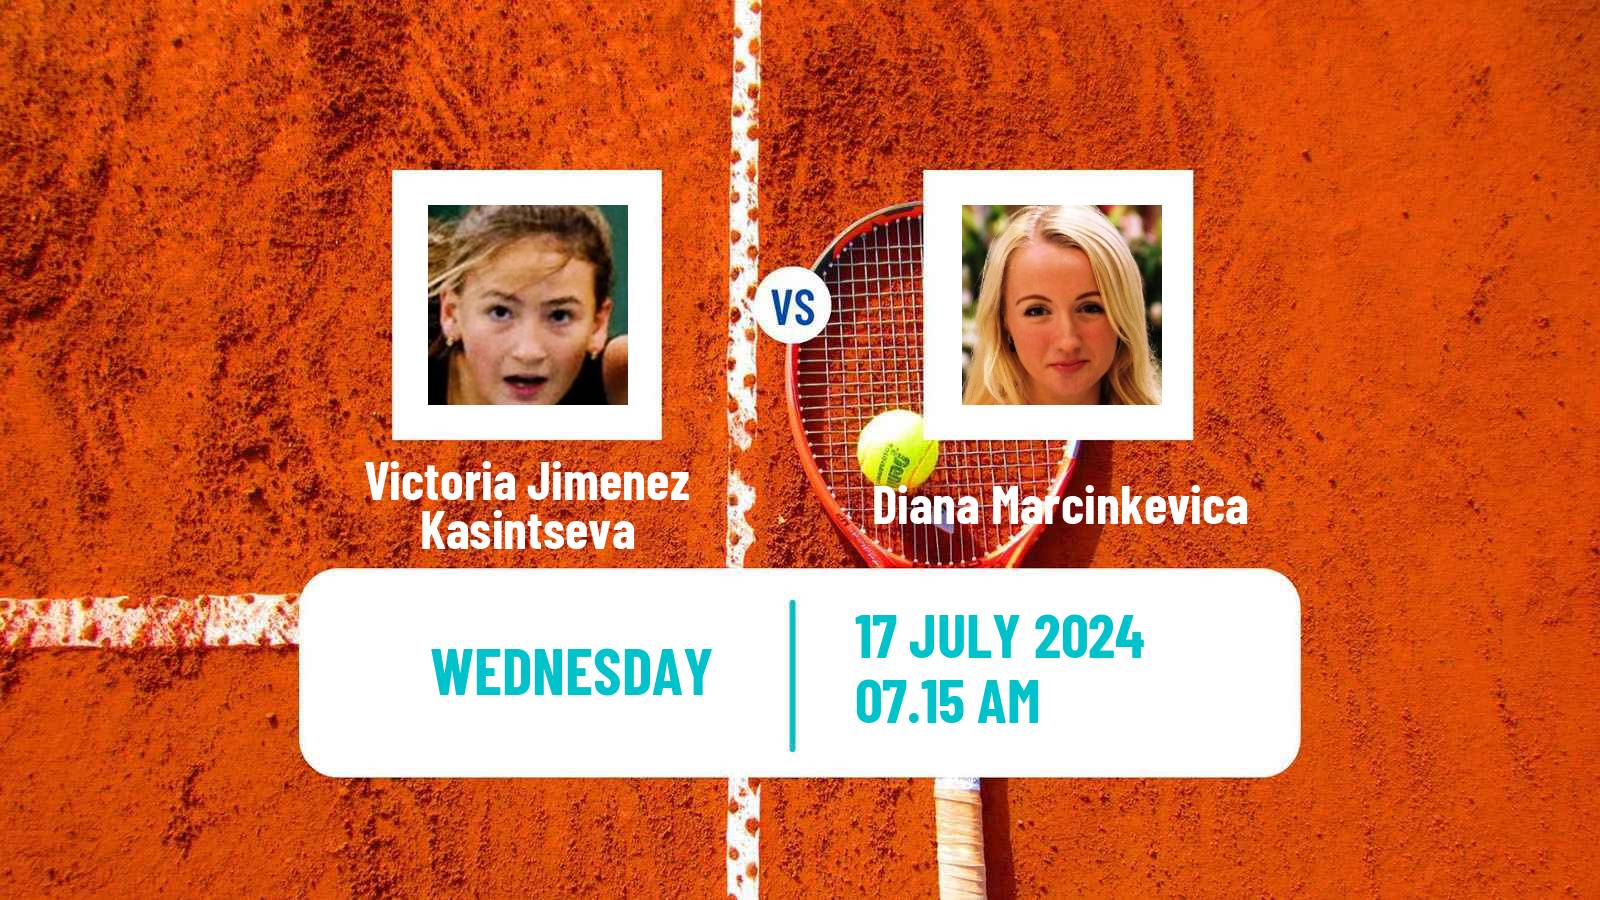 Tennis ITF W100 Vitoria Gasteiz Women Victoria Jimenez Kasintseva - Diana Marcinkevica